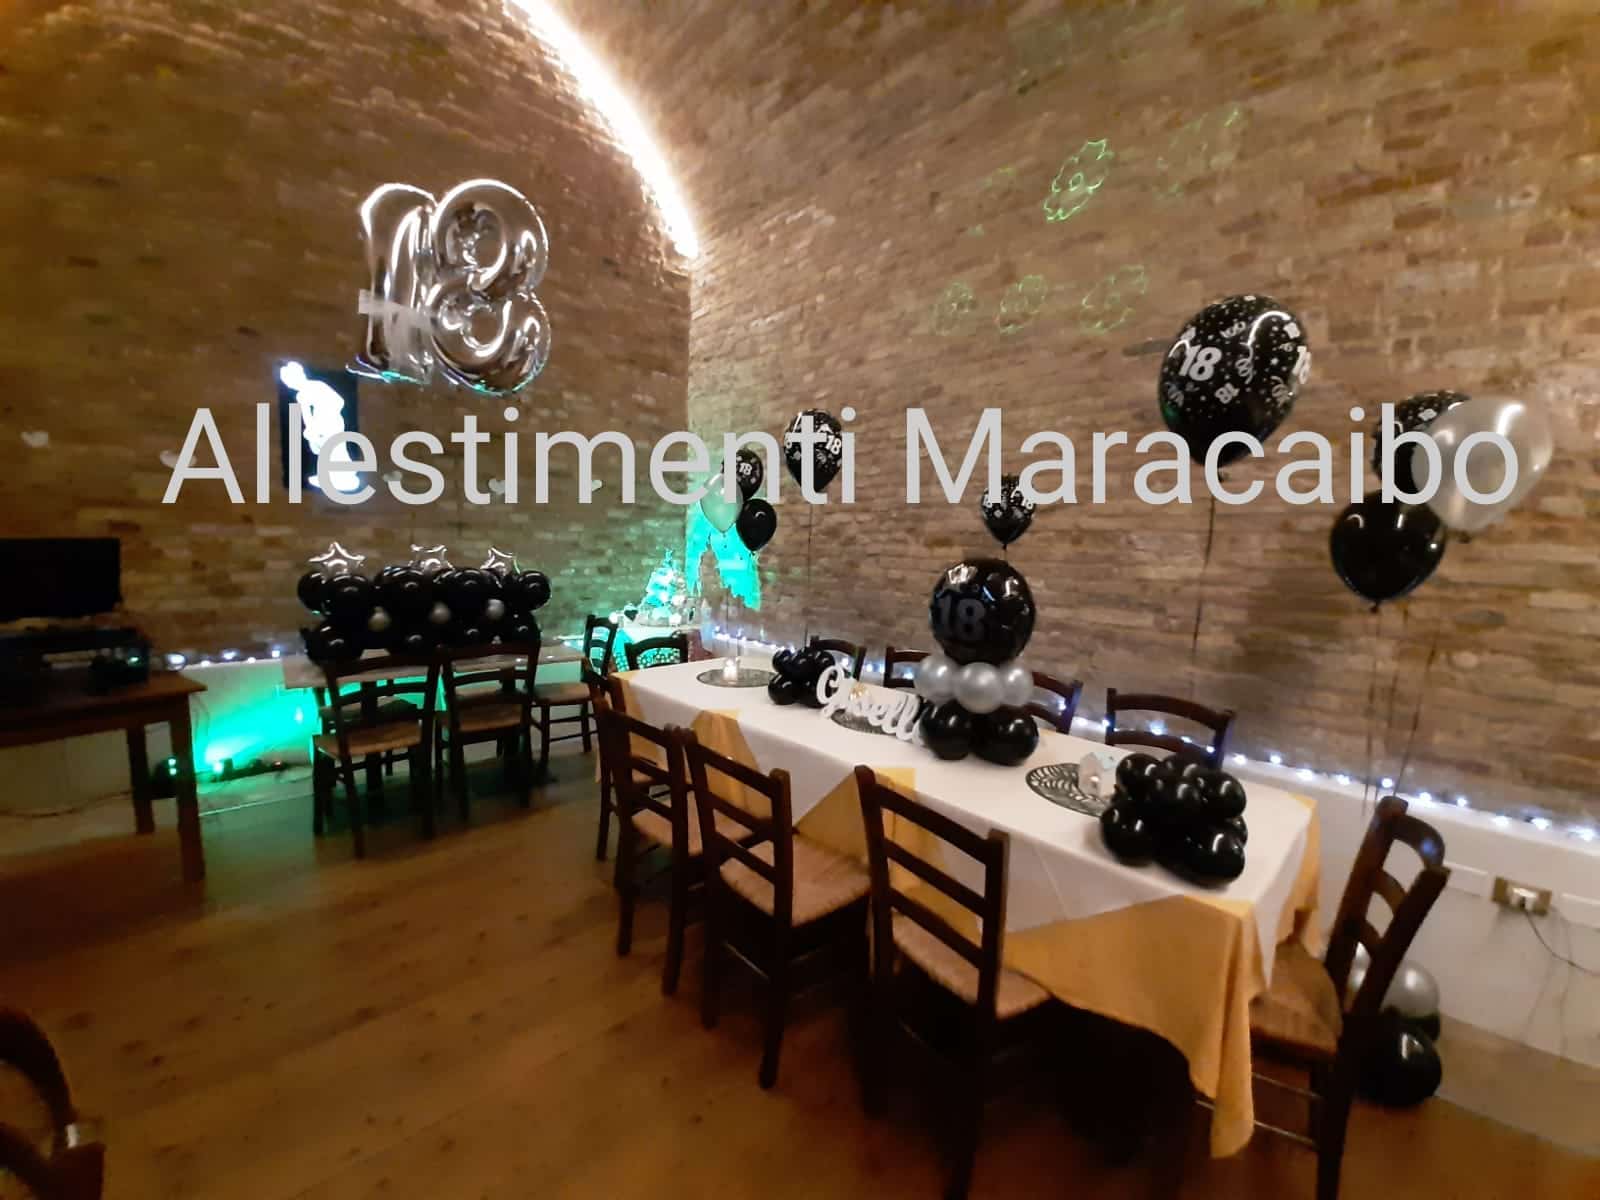 Numero luxury 18 anni e centrotavola diciottesimo allestimento diciotto anni palloncini a tema festa event planner Ancona Macerata